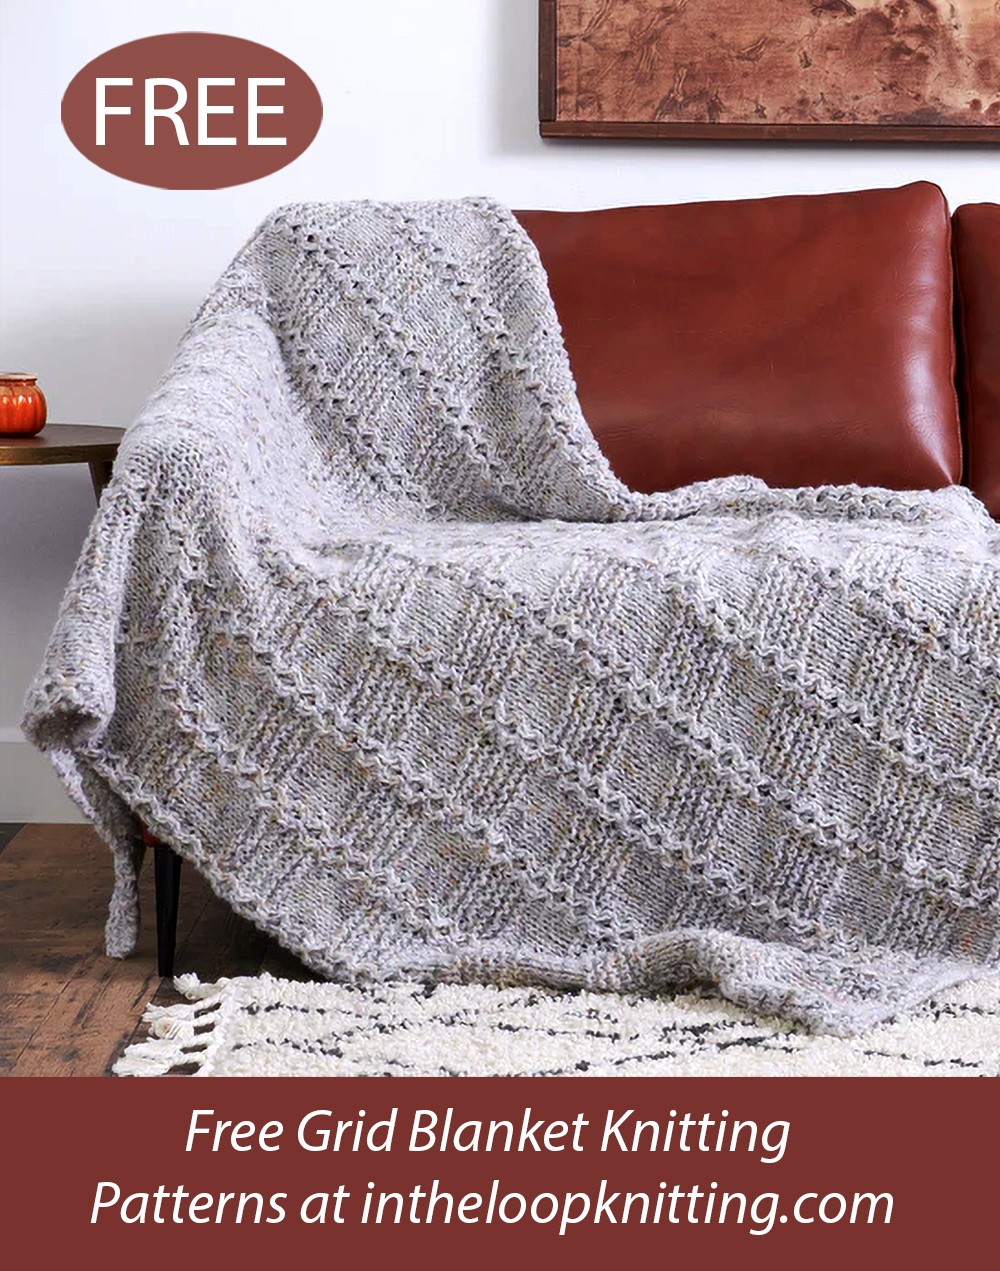 Free Blanket Knitting Pattern Garter Blocks Blanket